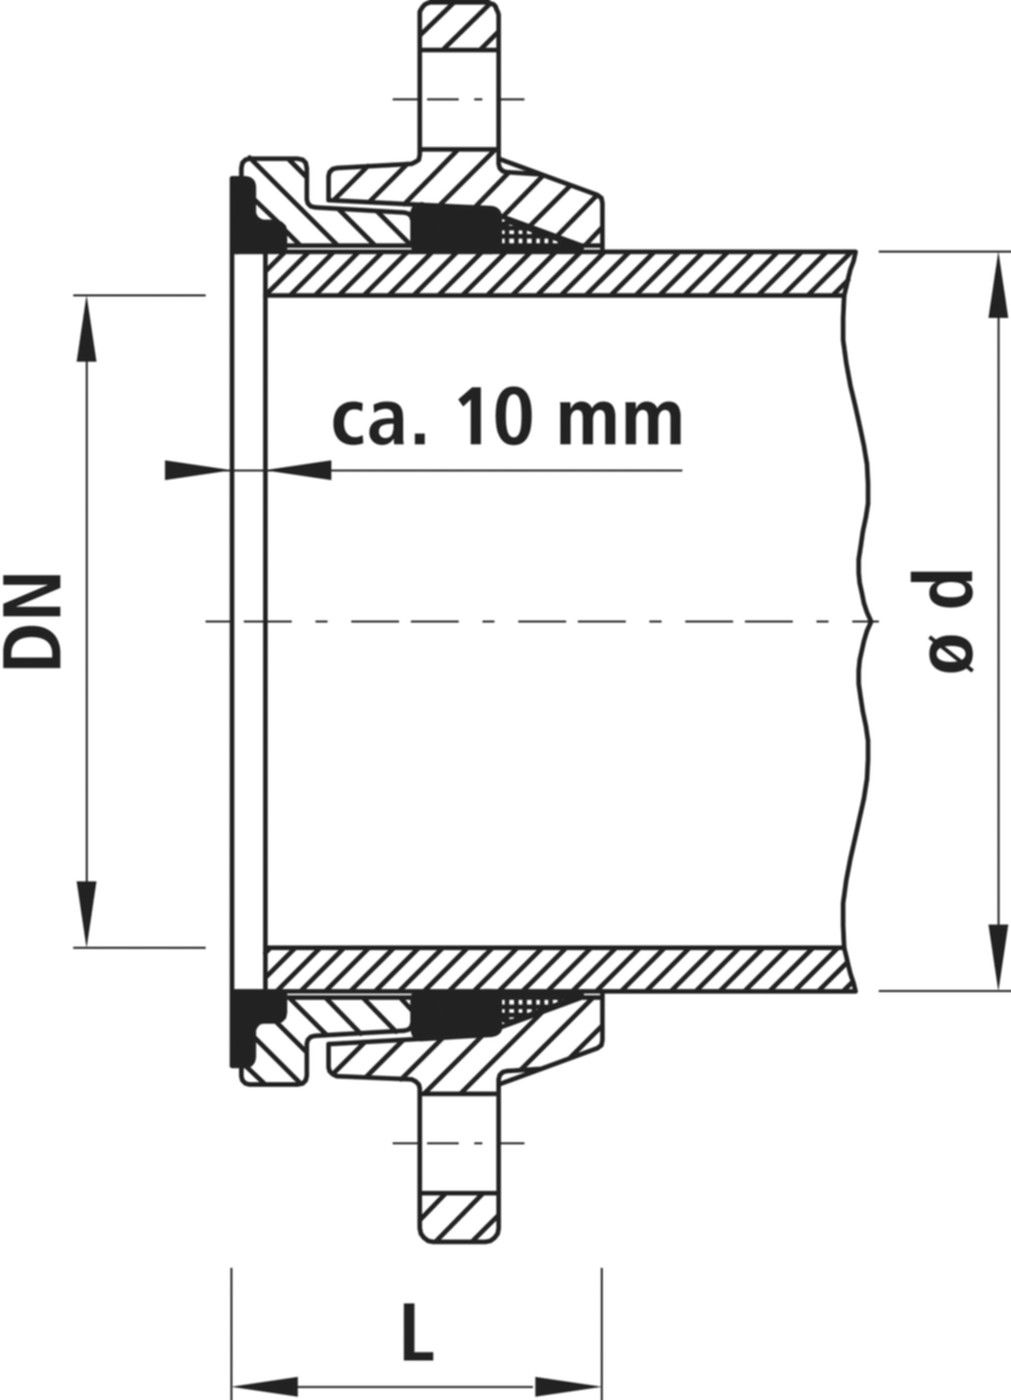 Zweikammer-Flansch für Stahlrohre 7150 schubsicher, PN 10/16 DN 100 / AD 114mm - Hawle Flanschformstücke